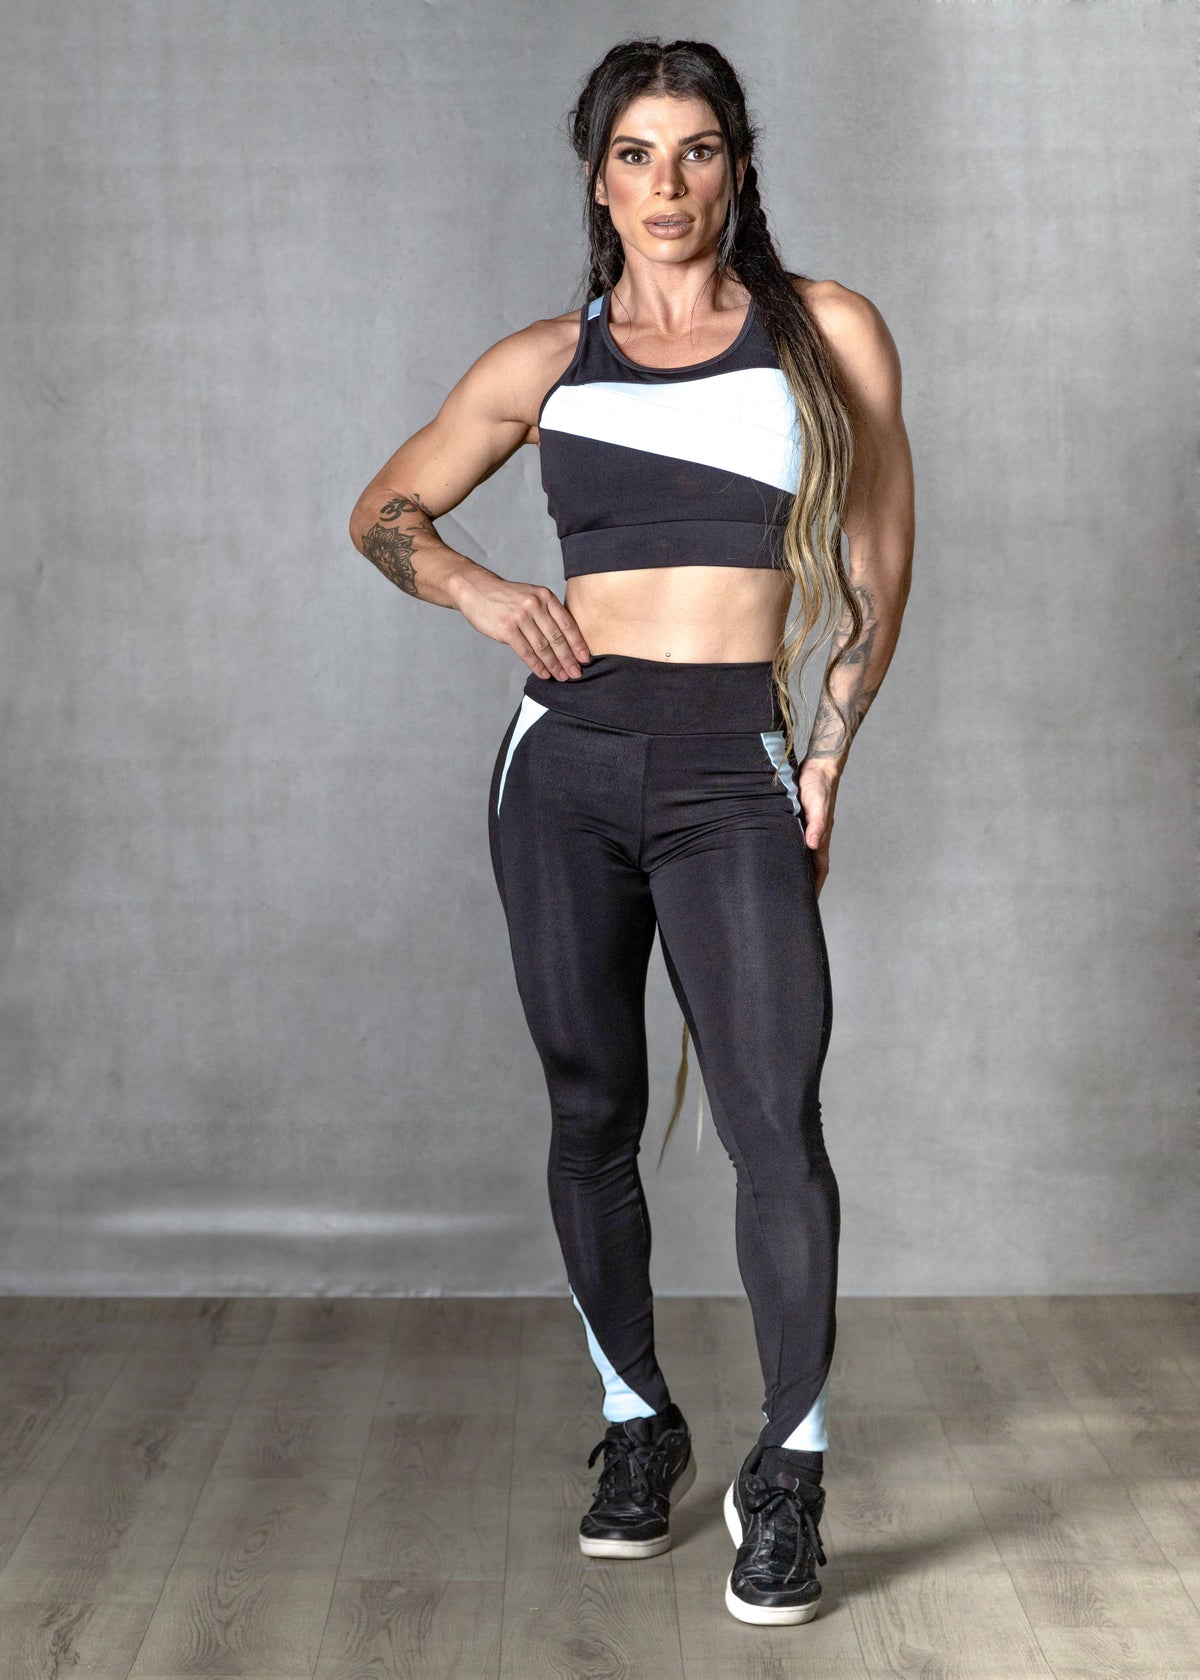 Conjunto Fitness MoveMax - Top Nadador + Calça Legging Recorte - Preto